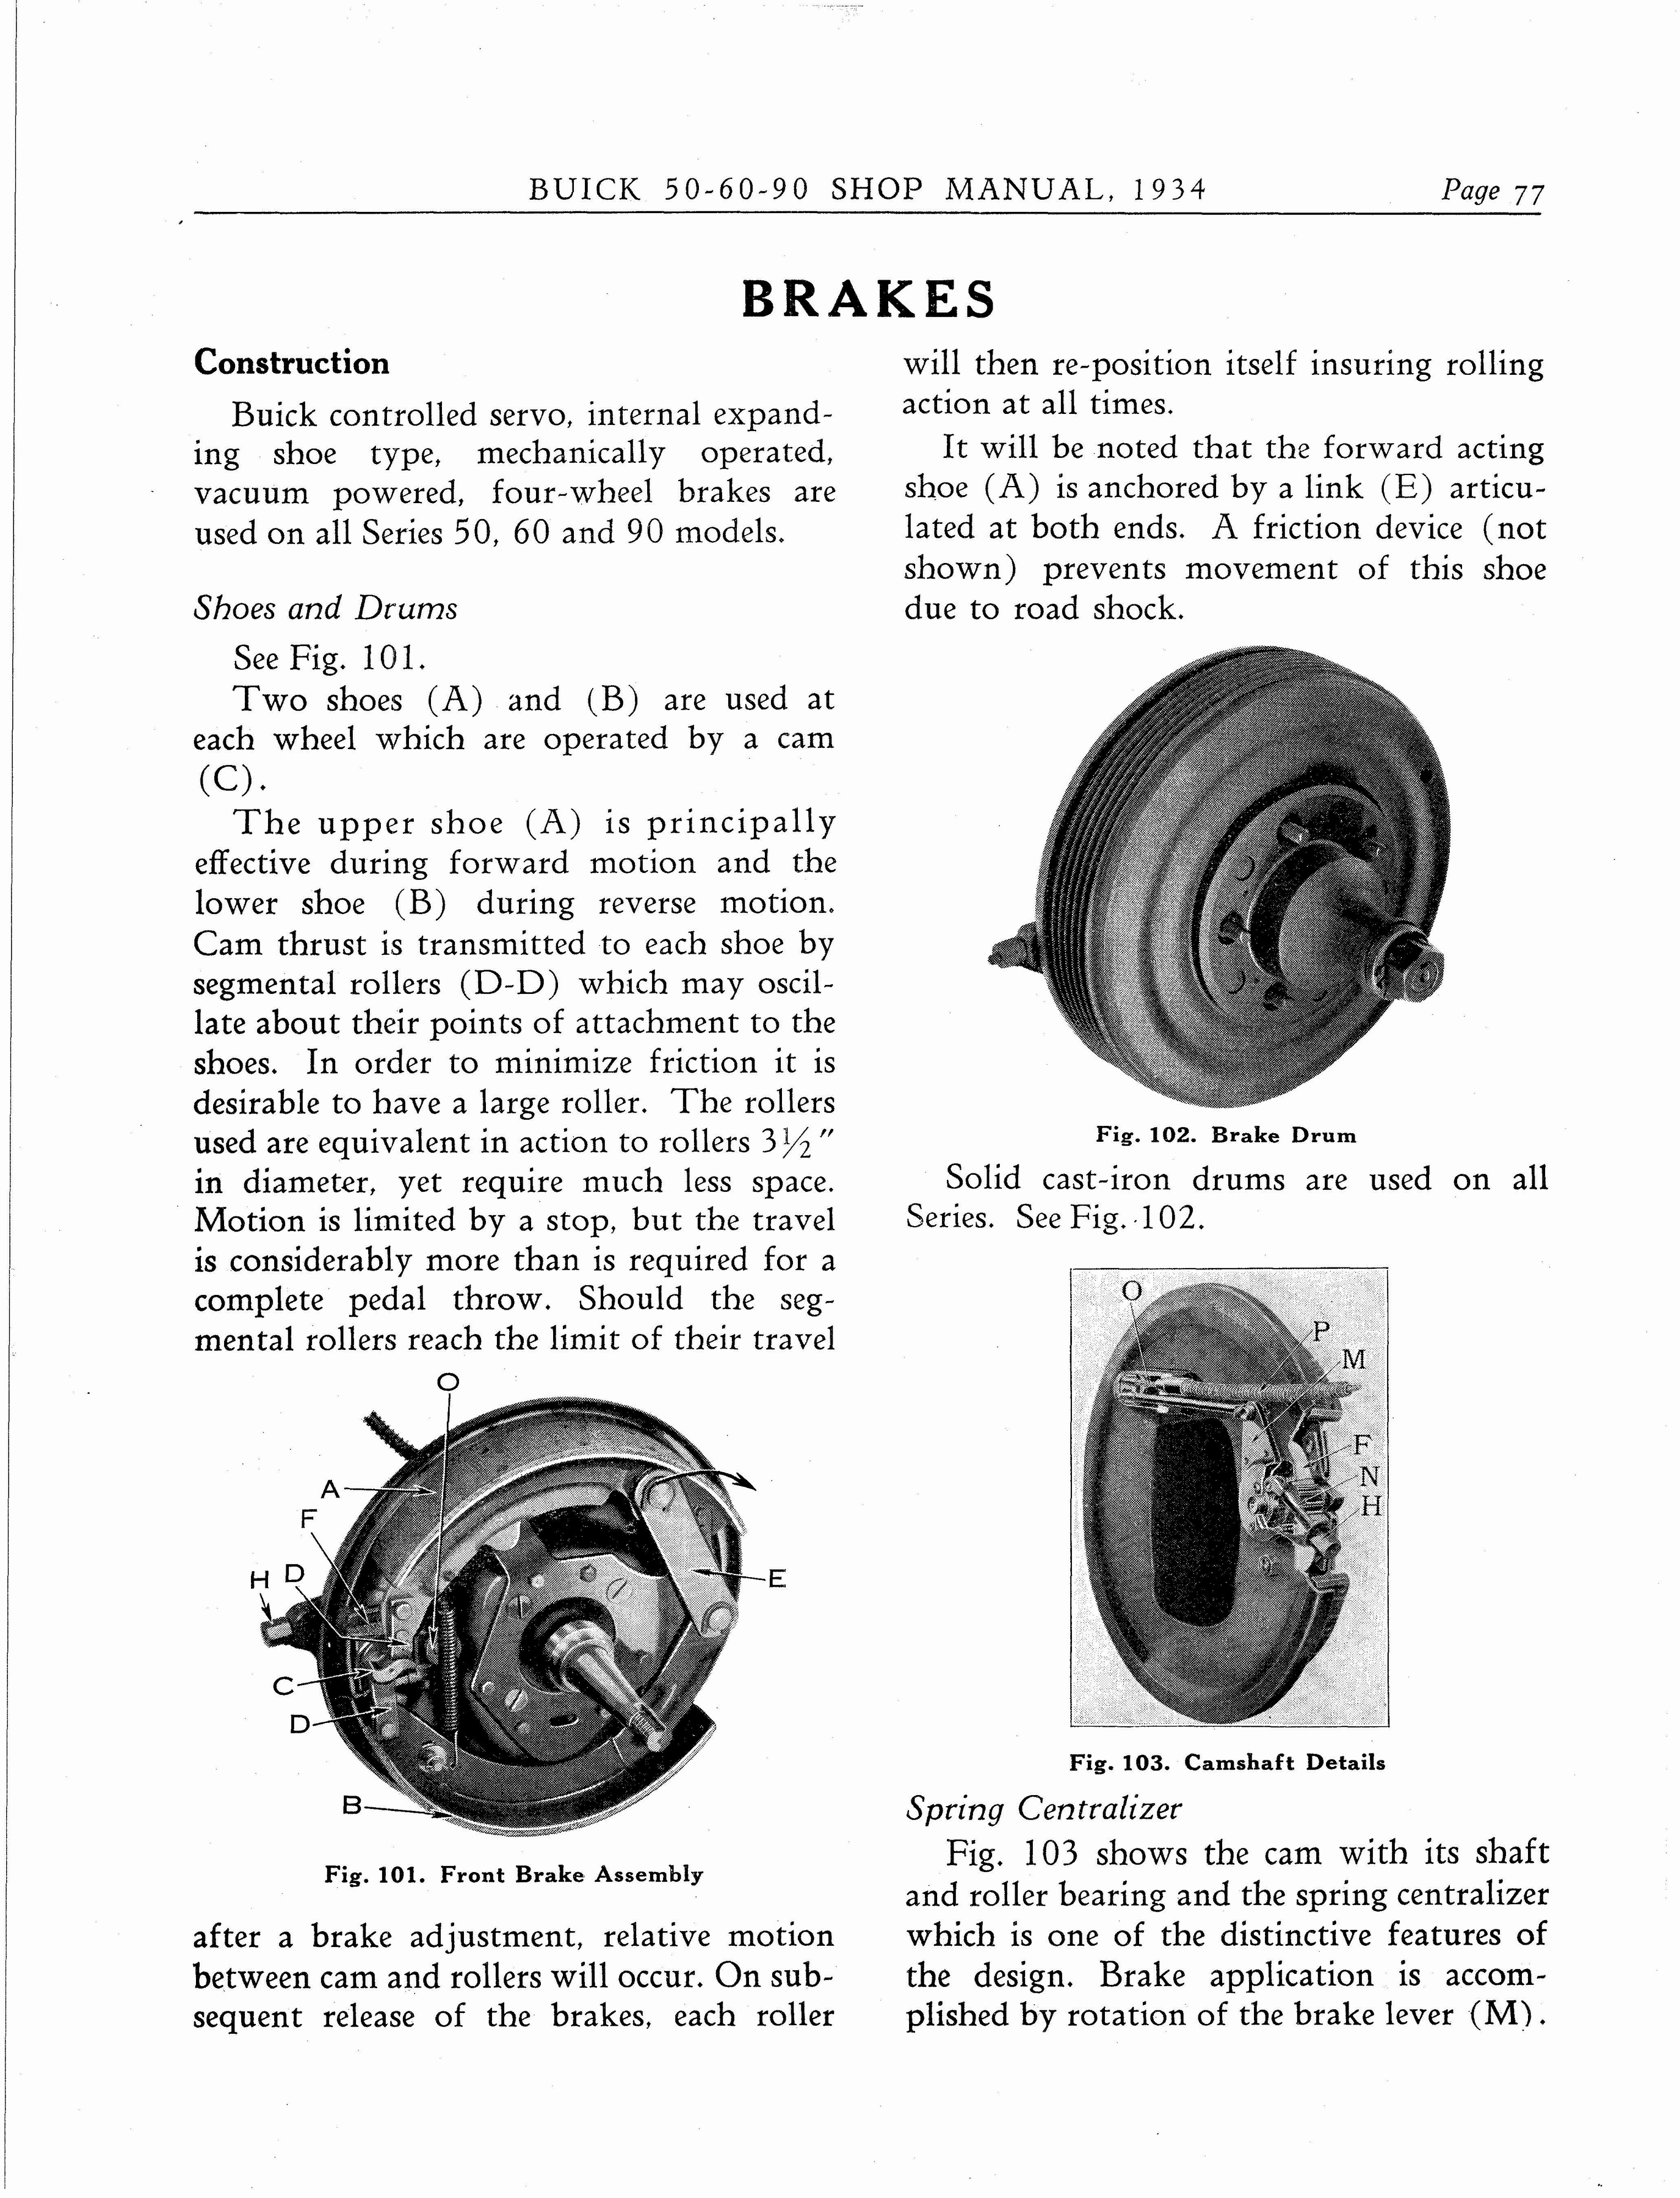 n_1934 Buick Series 50-60-90 Shop Manual_Page_078.jpg